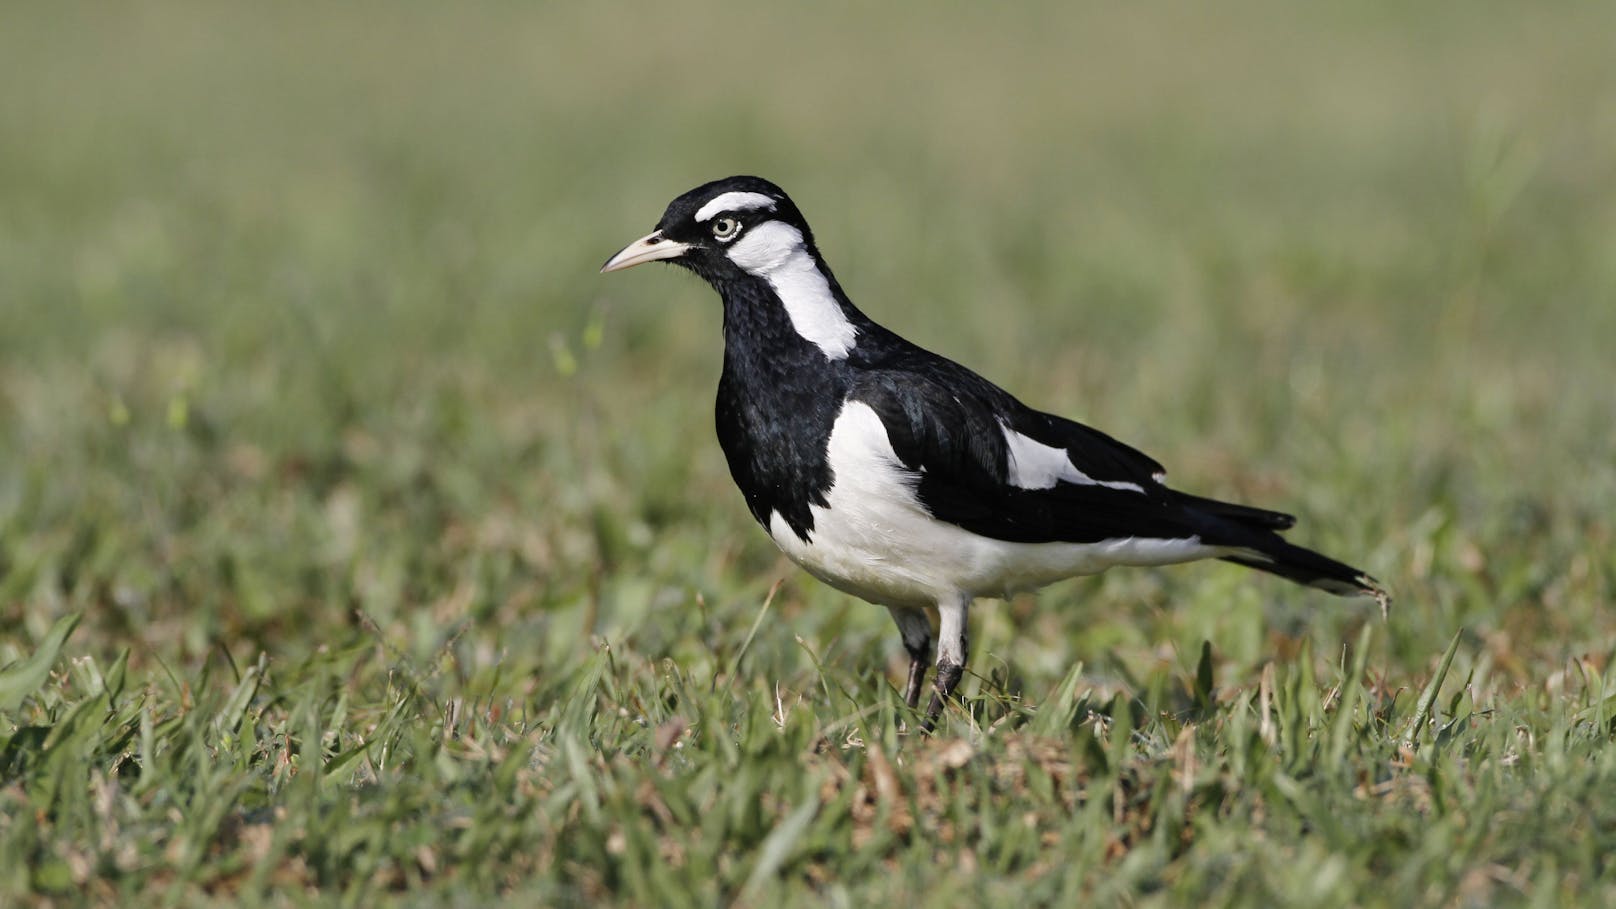 Der "Stelzenmonarch" gehört zu den Sperlingsvögel ist ausschließlich am Kontinent Australien heimisch und verbreitet. 